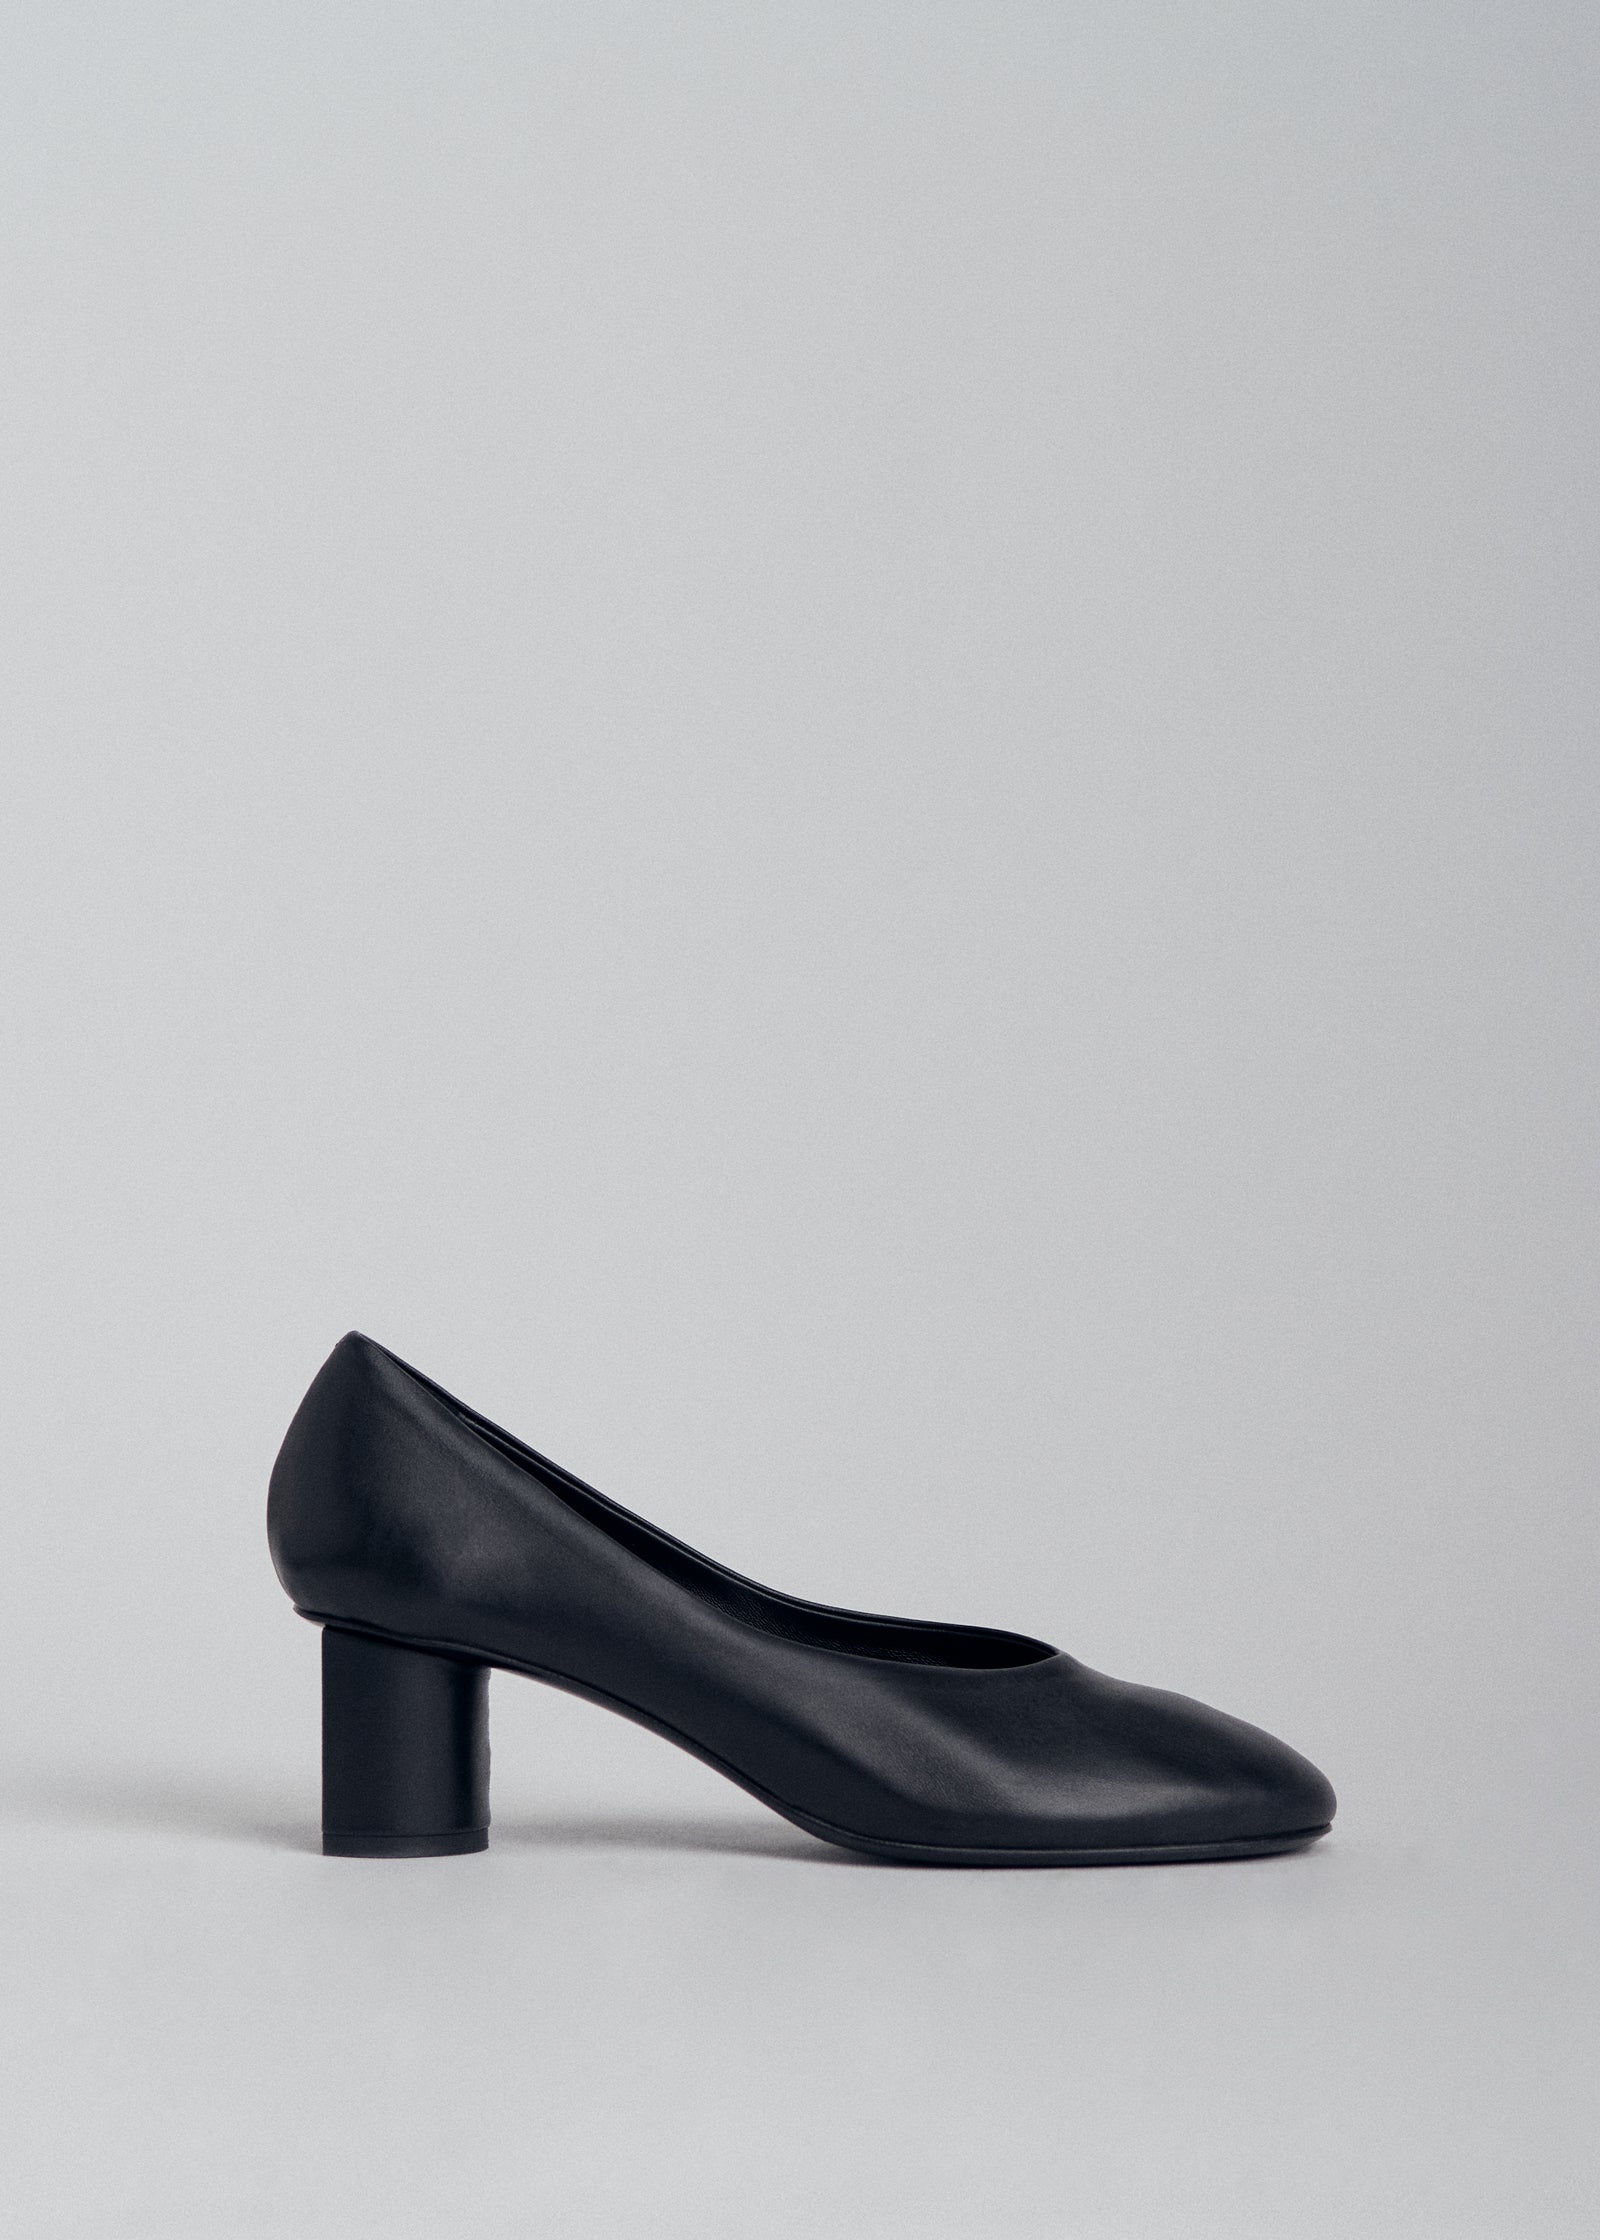 Pumps shoes for women - Buy Women Pumps online | Mochi Shoes